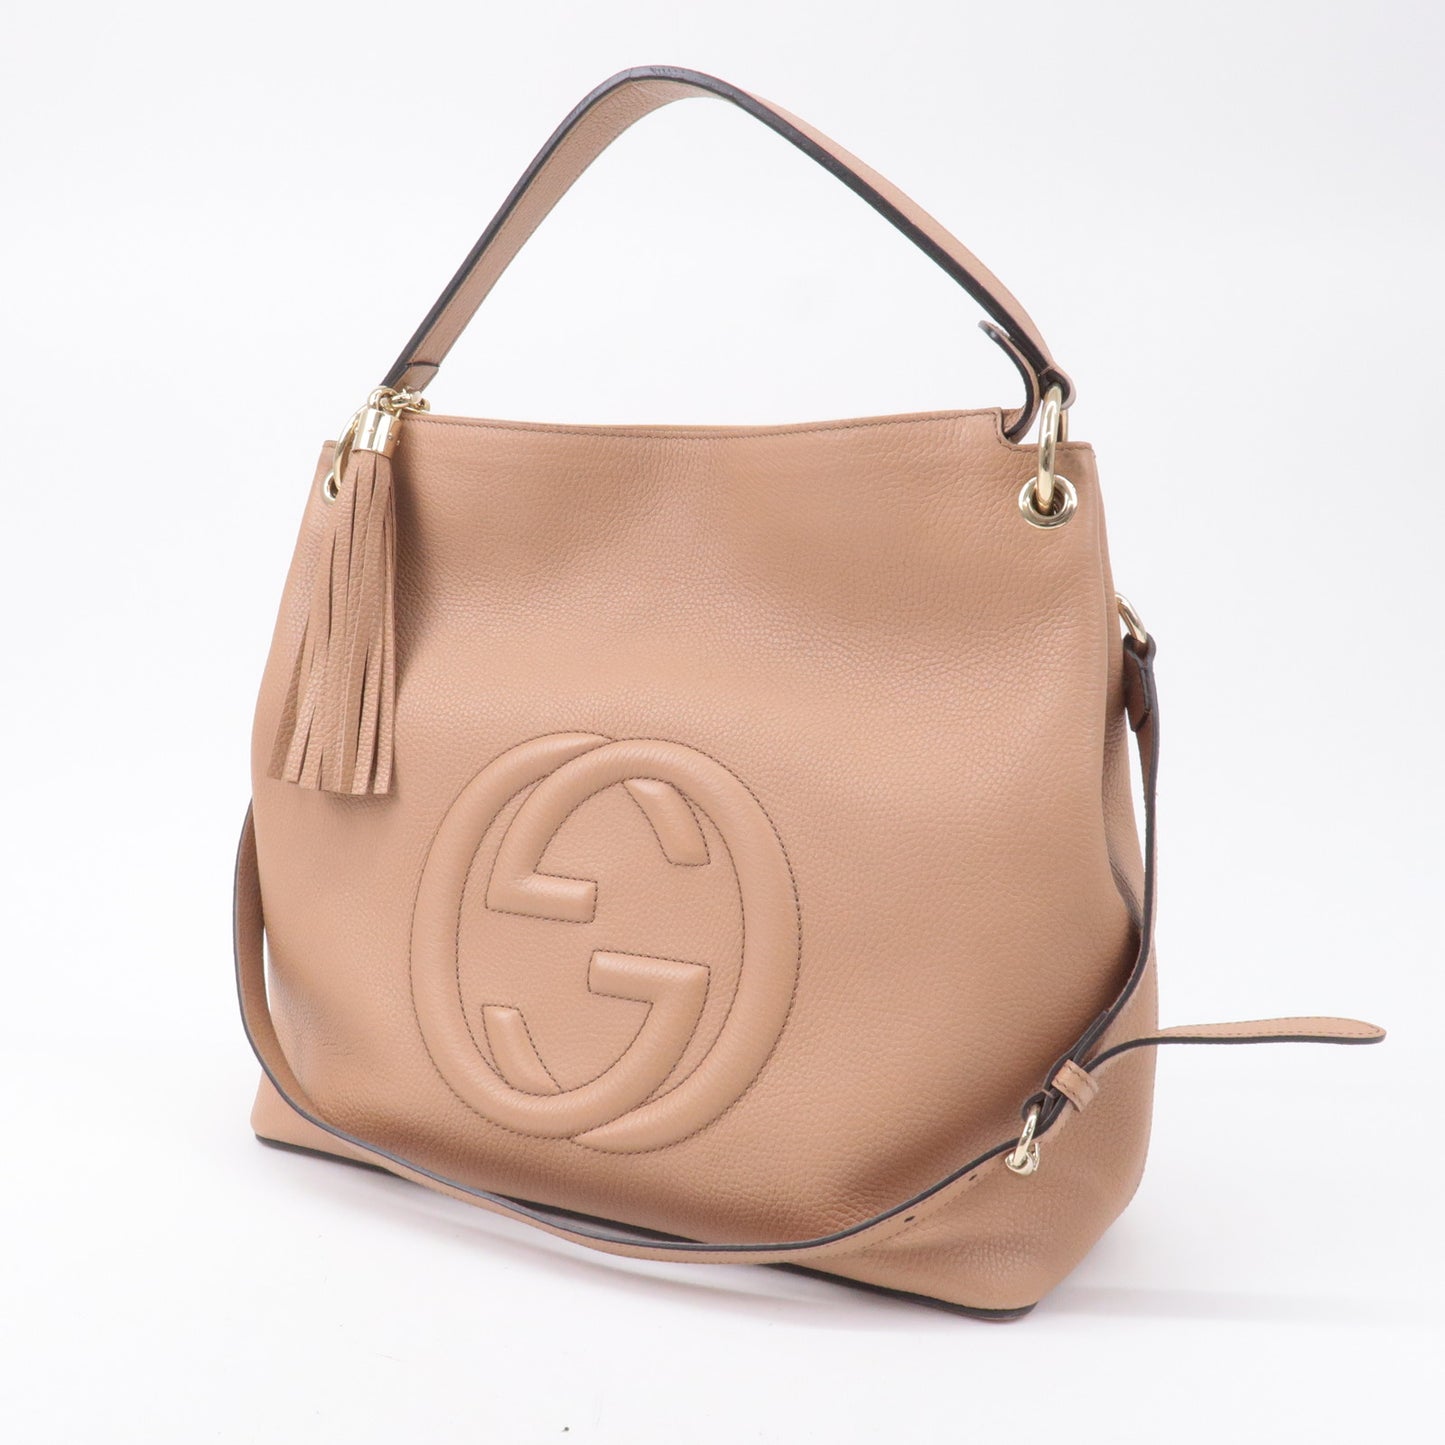 GUCCI SOHO Leather Shoulder Bag Hand Bag Pink Beige 536194